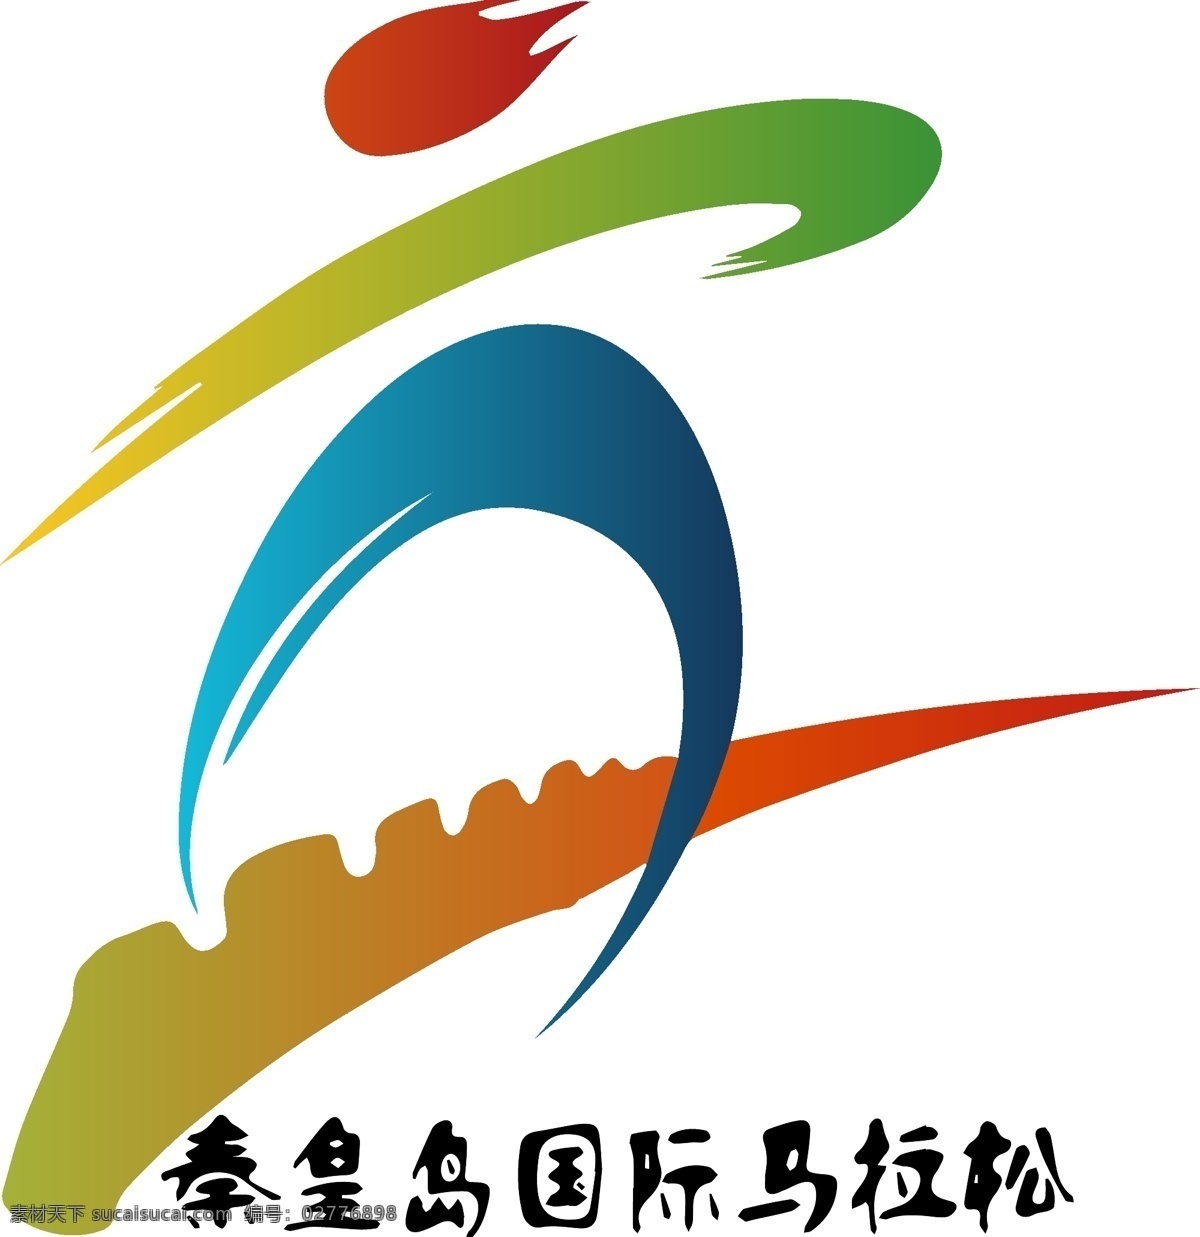 秦皇岛 国际 马拉松 logo 标志 秦皇岛马拉松 长城 奔跑 马拉松标志 国际马拉松 logo设计